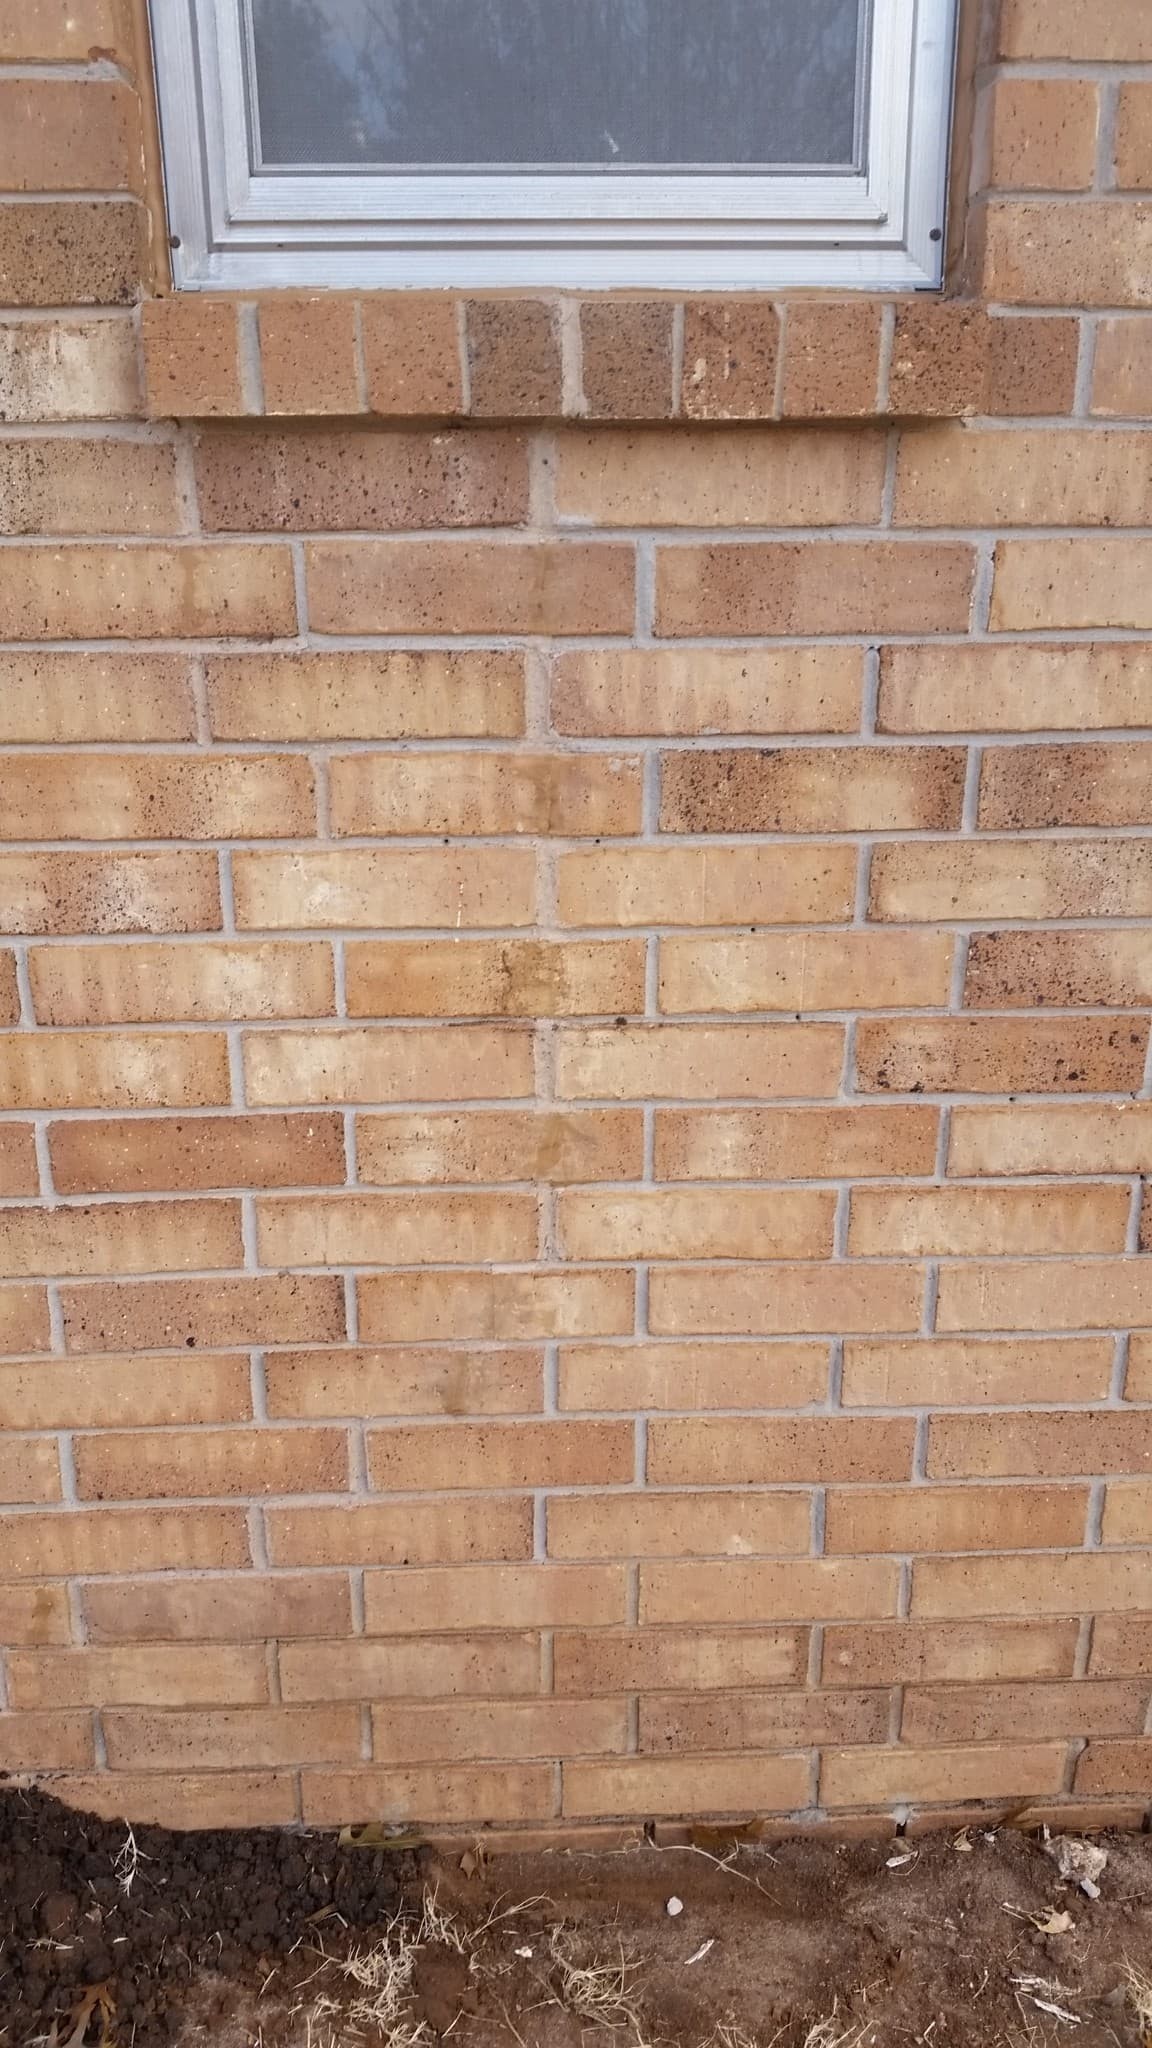 How to repair cracks in bricks